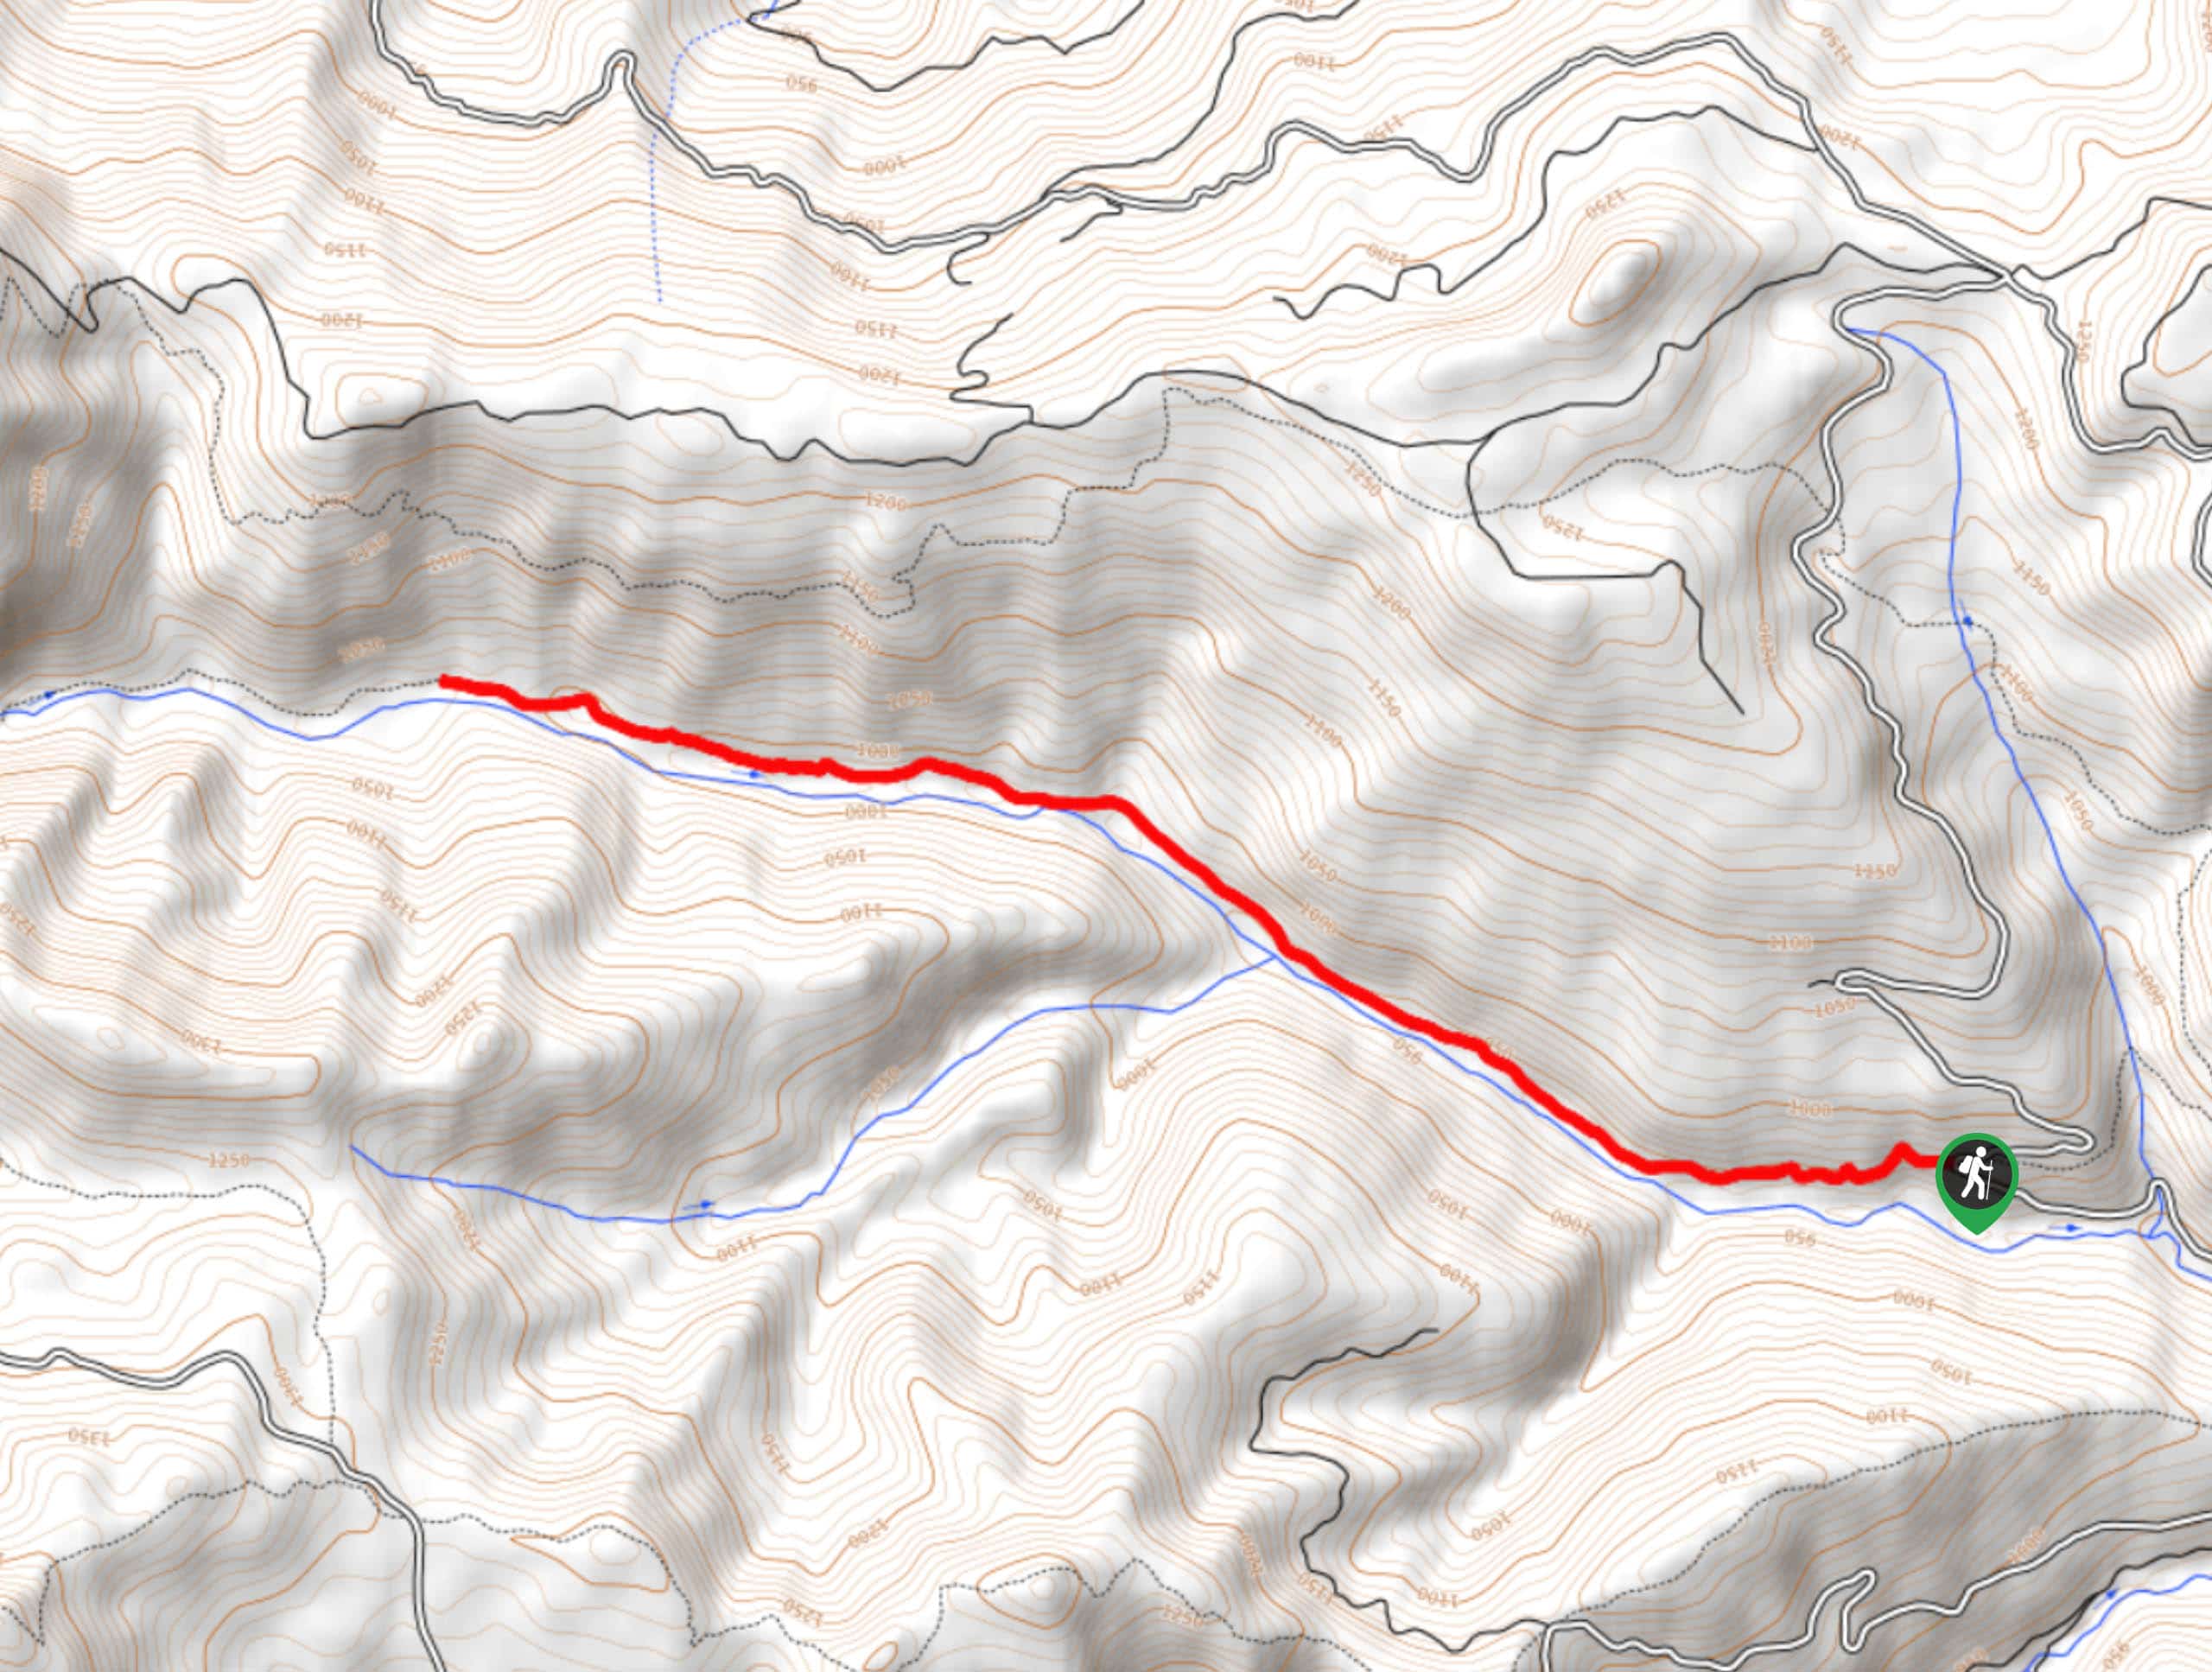 Taneum Creek Trail Map